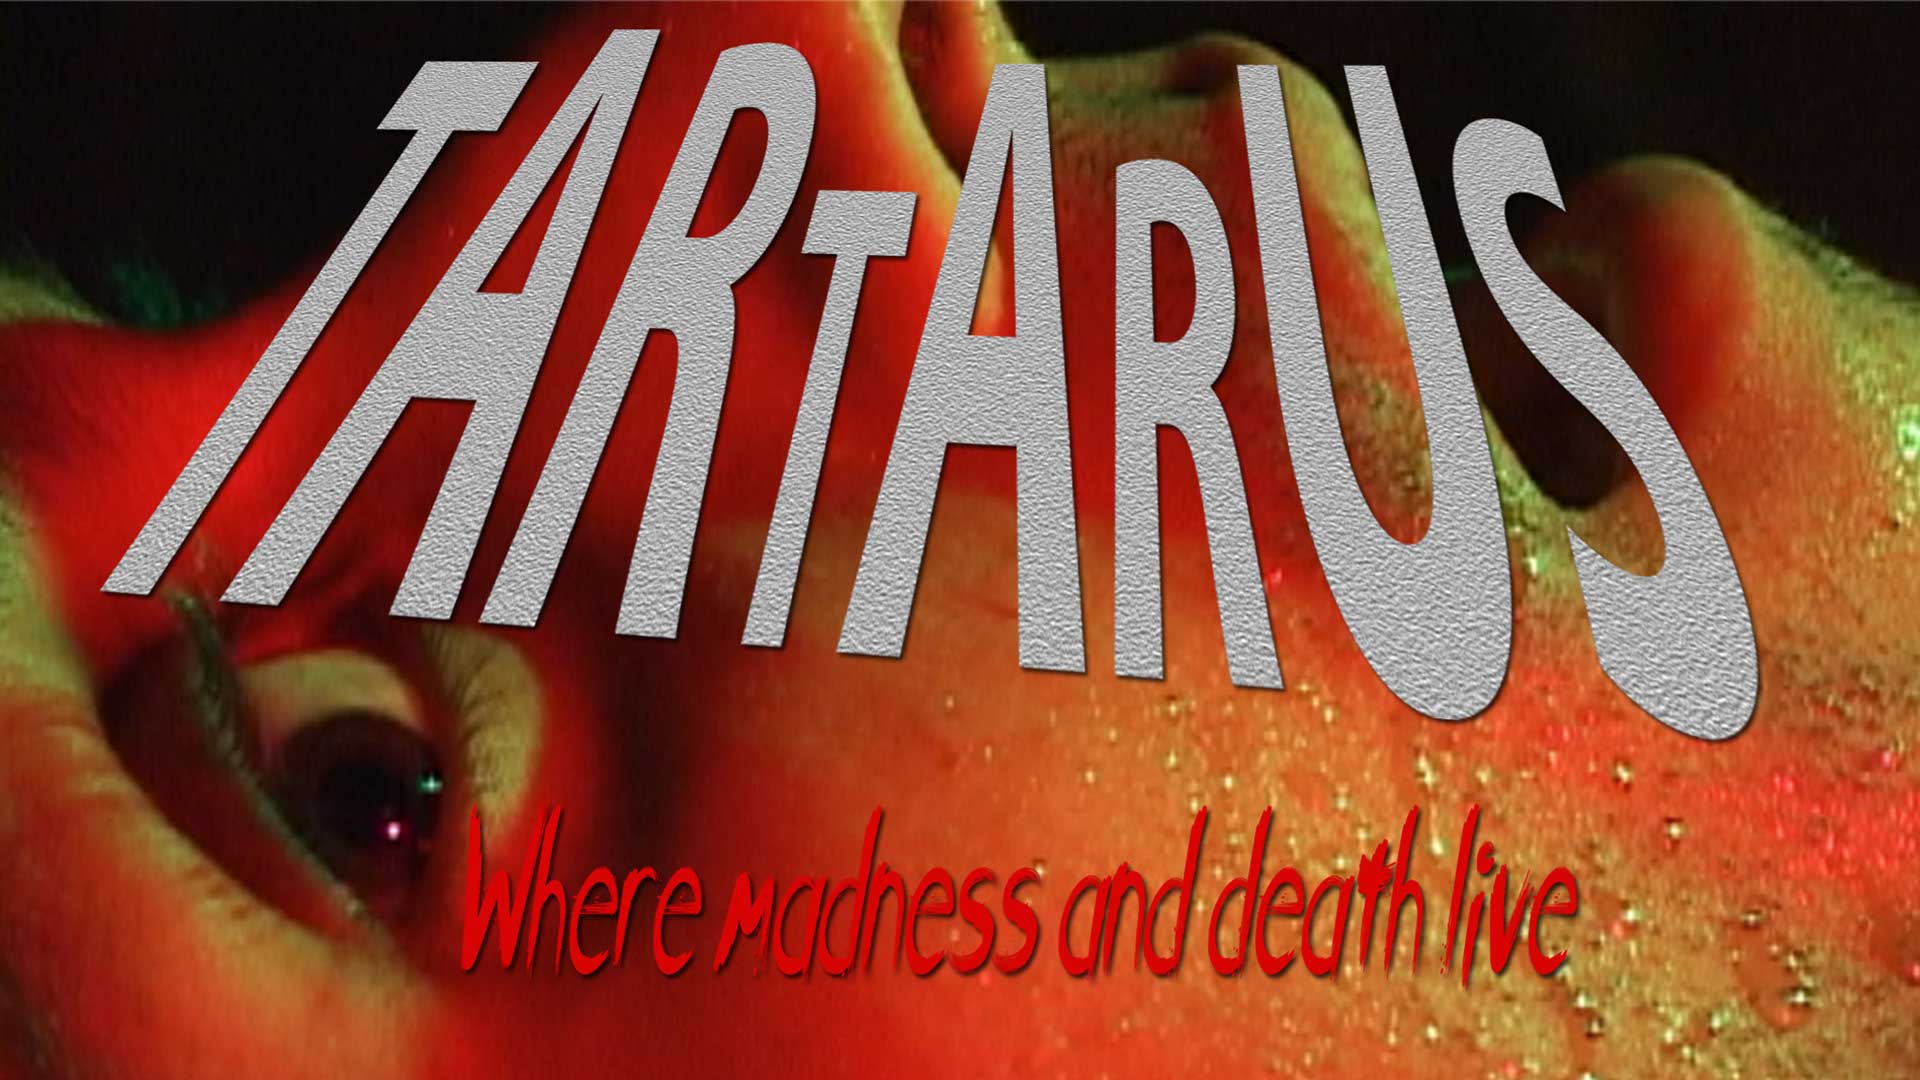 Tartarus